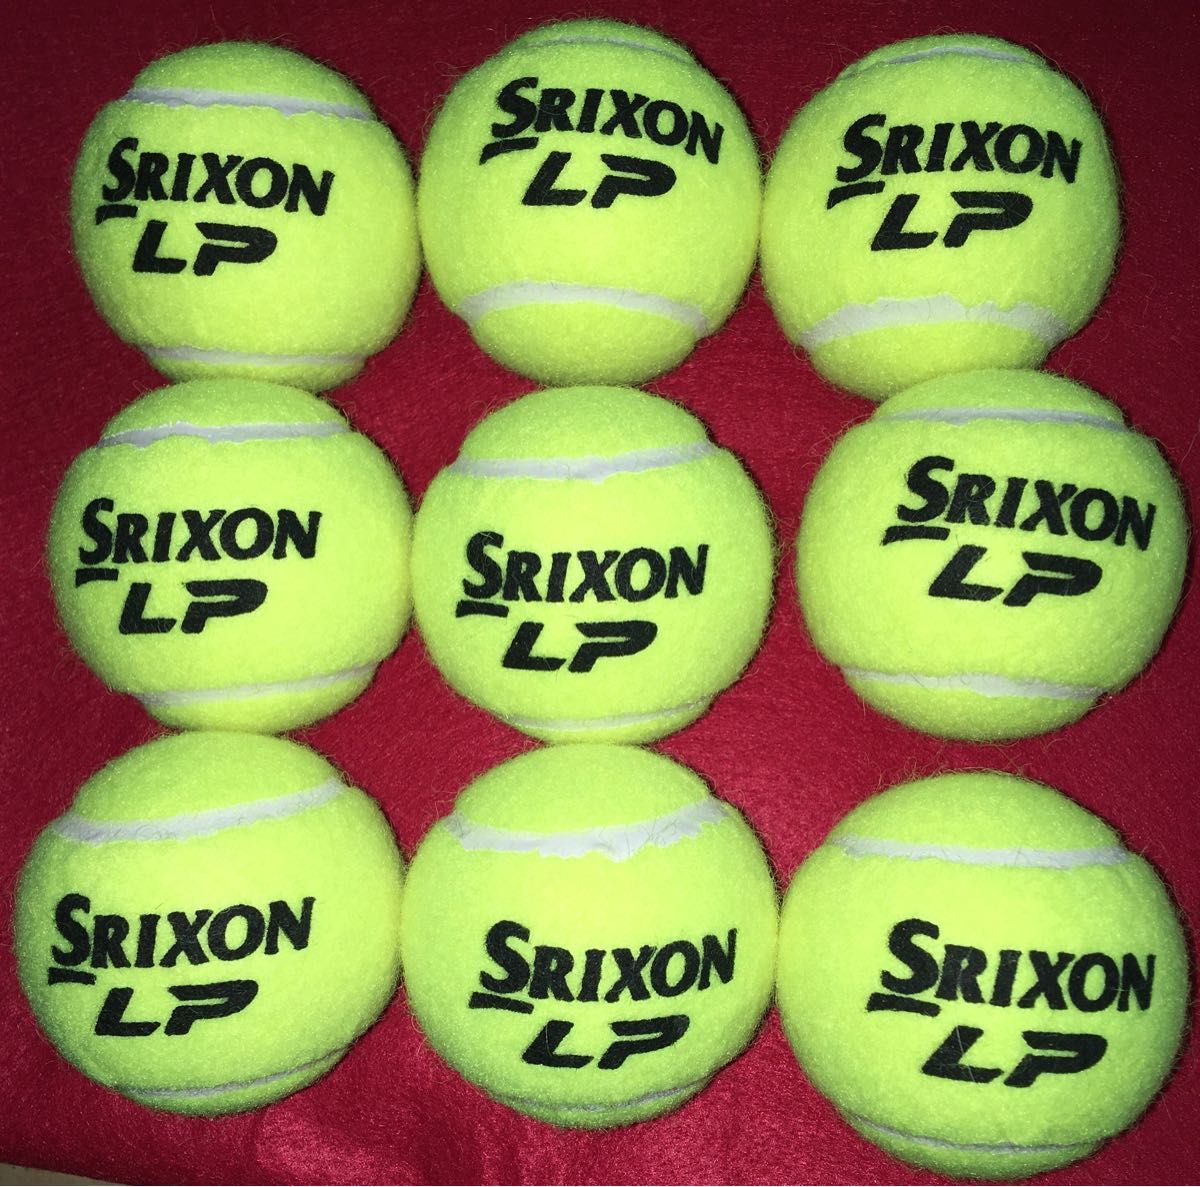 新品 ノンプレッシャー テニスボール SRIXON LP 10球